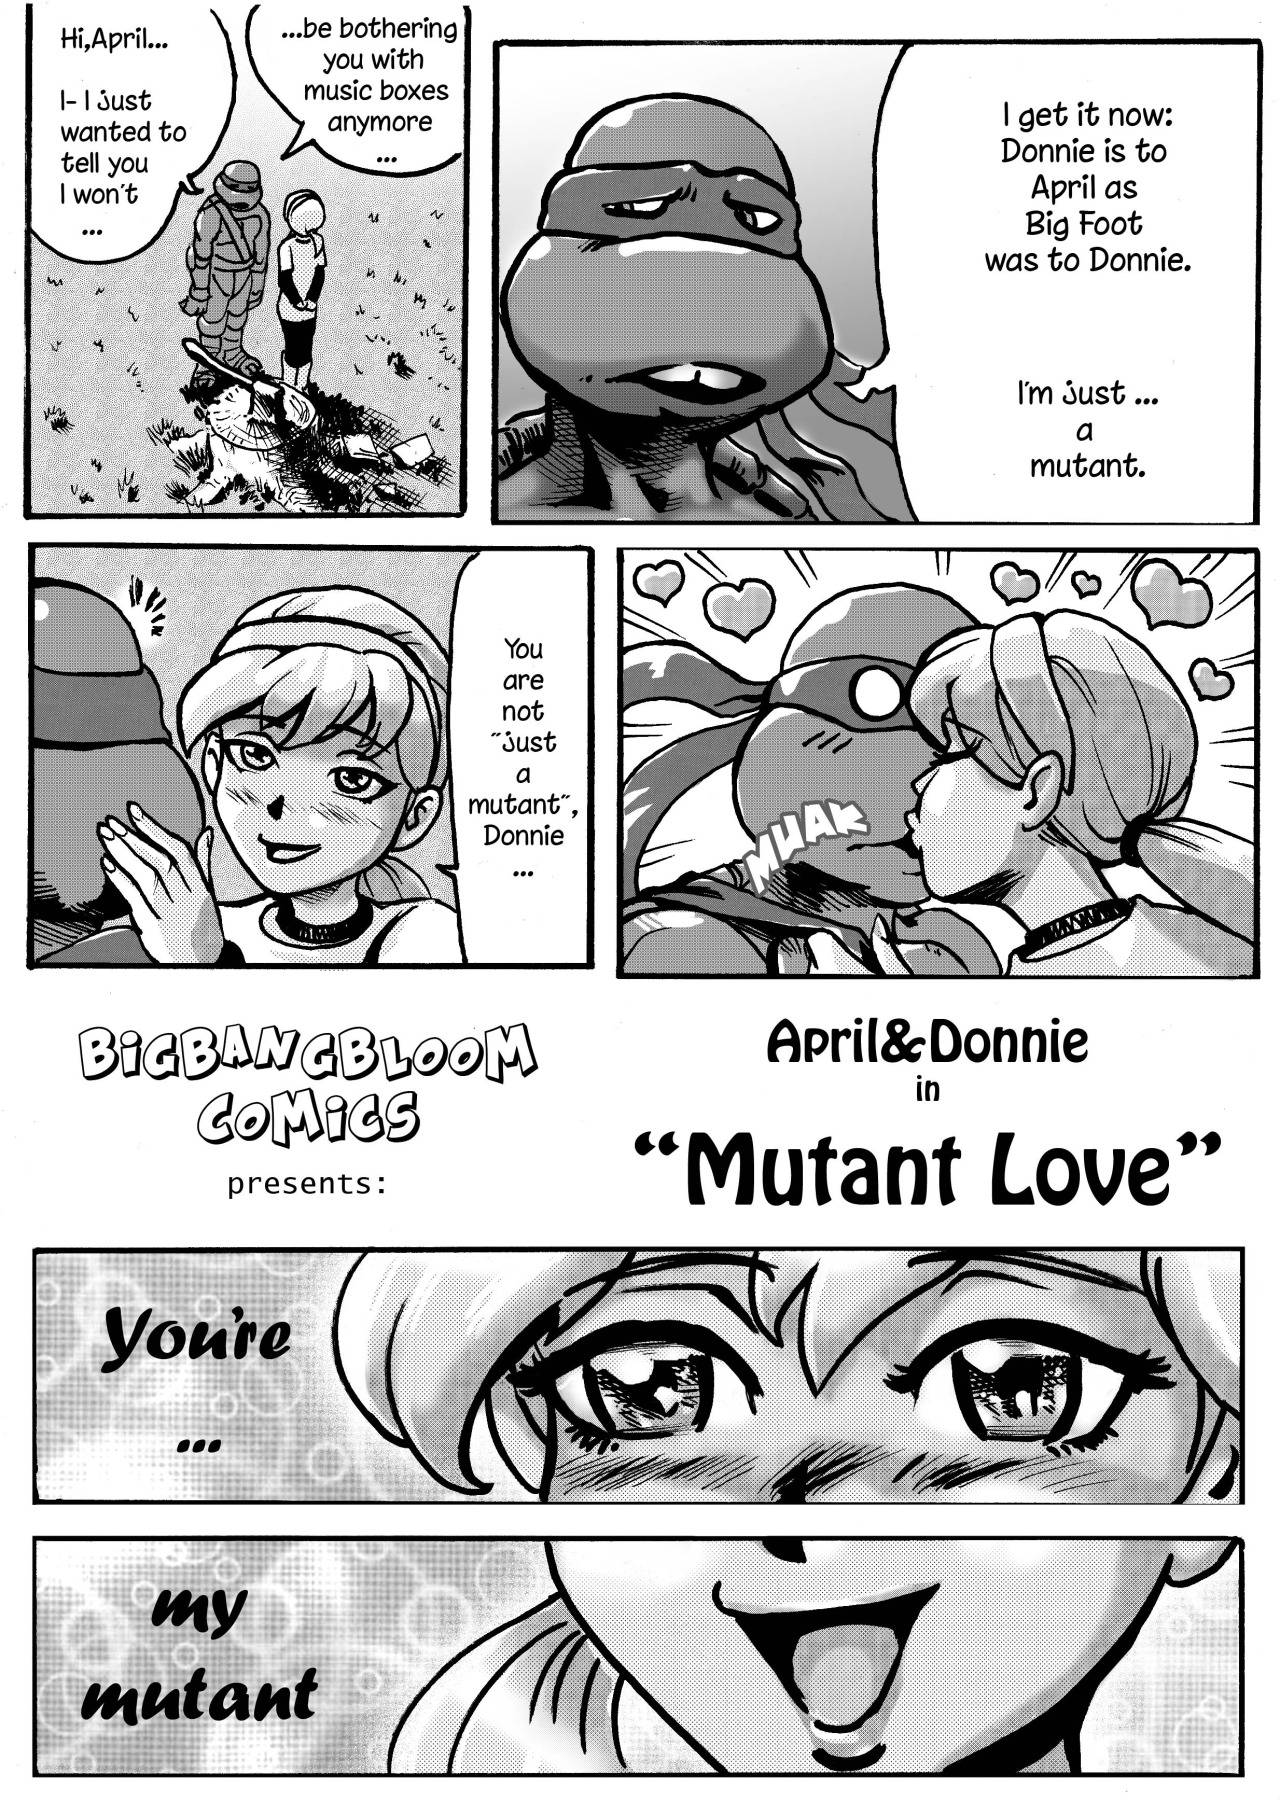 SureFap xxx porno Teenage Mutant Ninja Turtles - [bigbangbloom] - April & Donni in Mutant Love